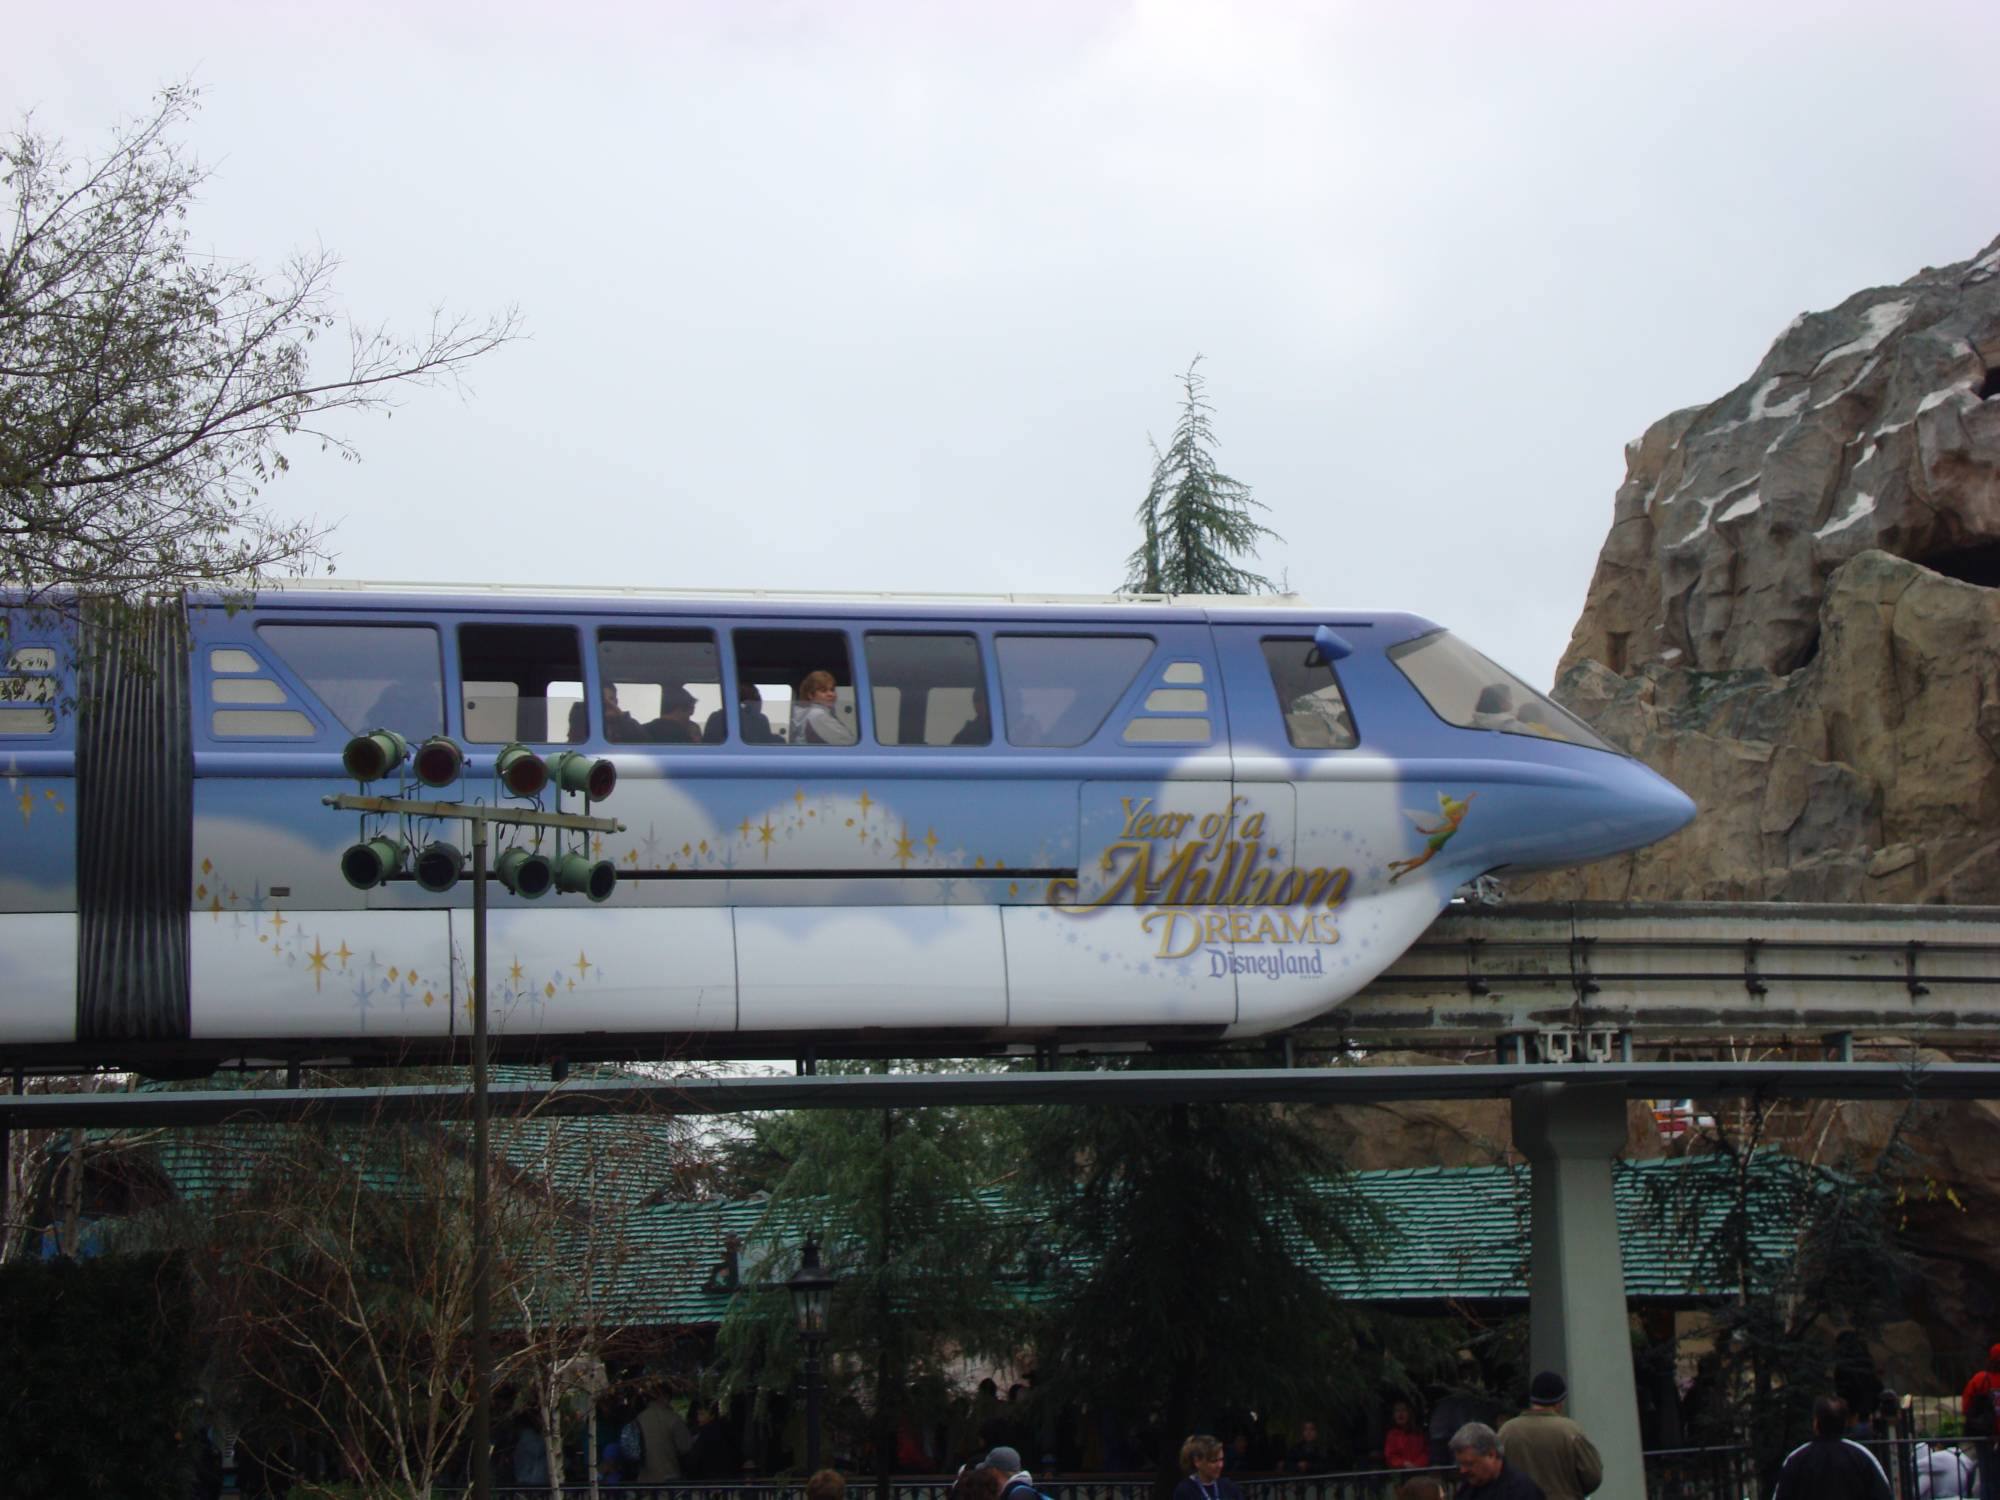 Disneyland - Monorail